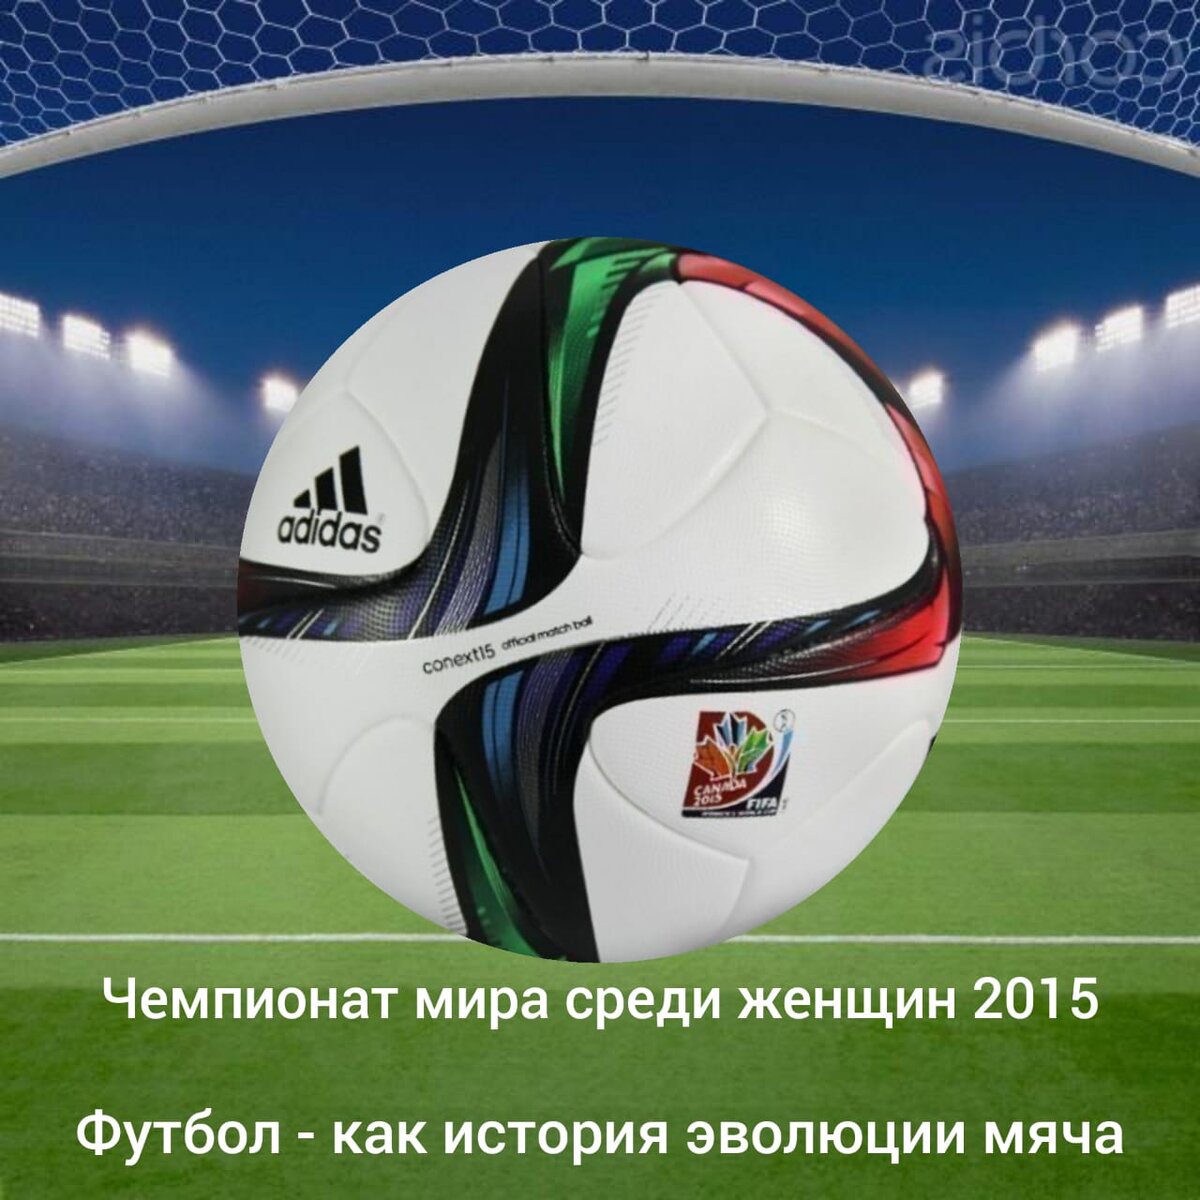 26 ноября компания Аdidas представила новый официальный мяч для турниров 2014, 2015 года. Мяч Adidas «Conext 15» заменил «Brazuca» на ряде международных матчей и крупных турниров 2014, 2015 года.